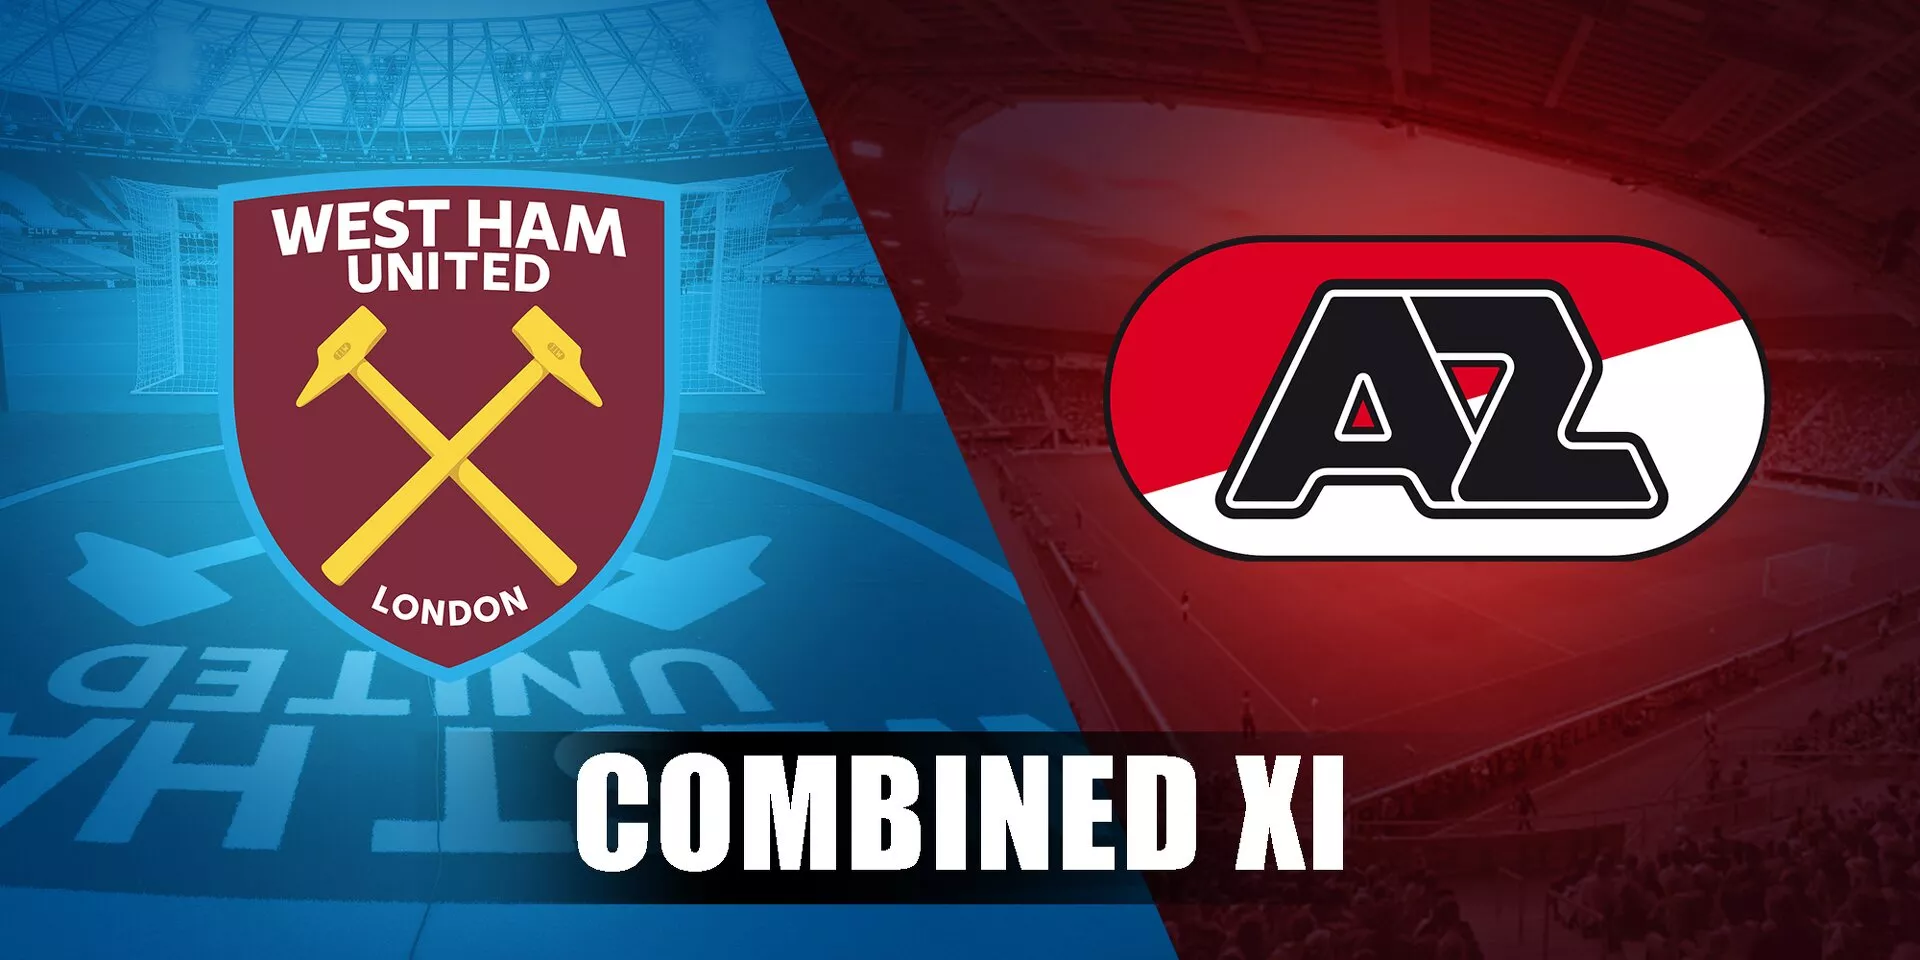 West Ham vs AZ Alkmaar: Combined XI